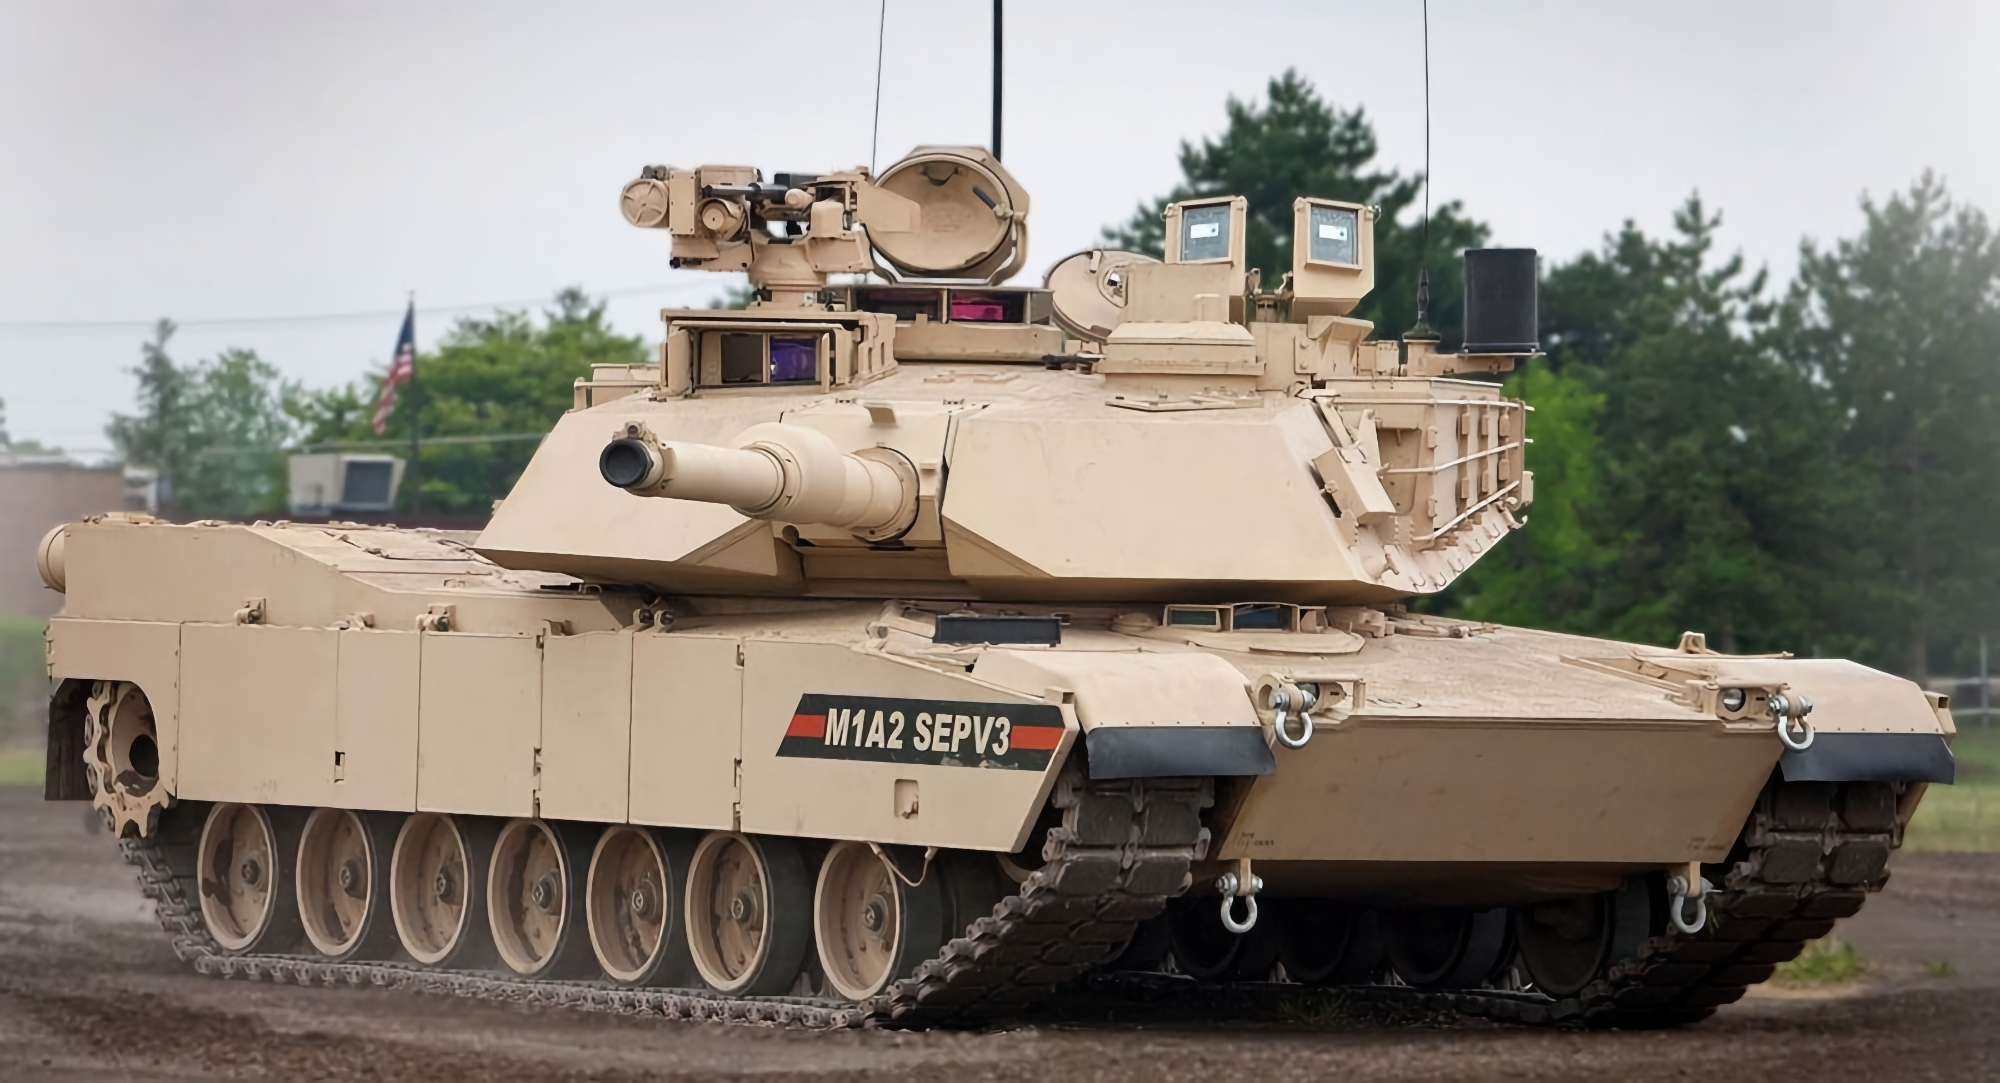 General Dynamics получили заказ на производство 250 современных танков Abrams M1A2 SEPv3 для Польши, стоимость контракта составляет $1.148 млрд